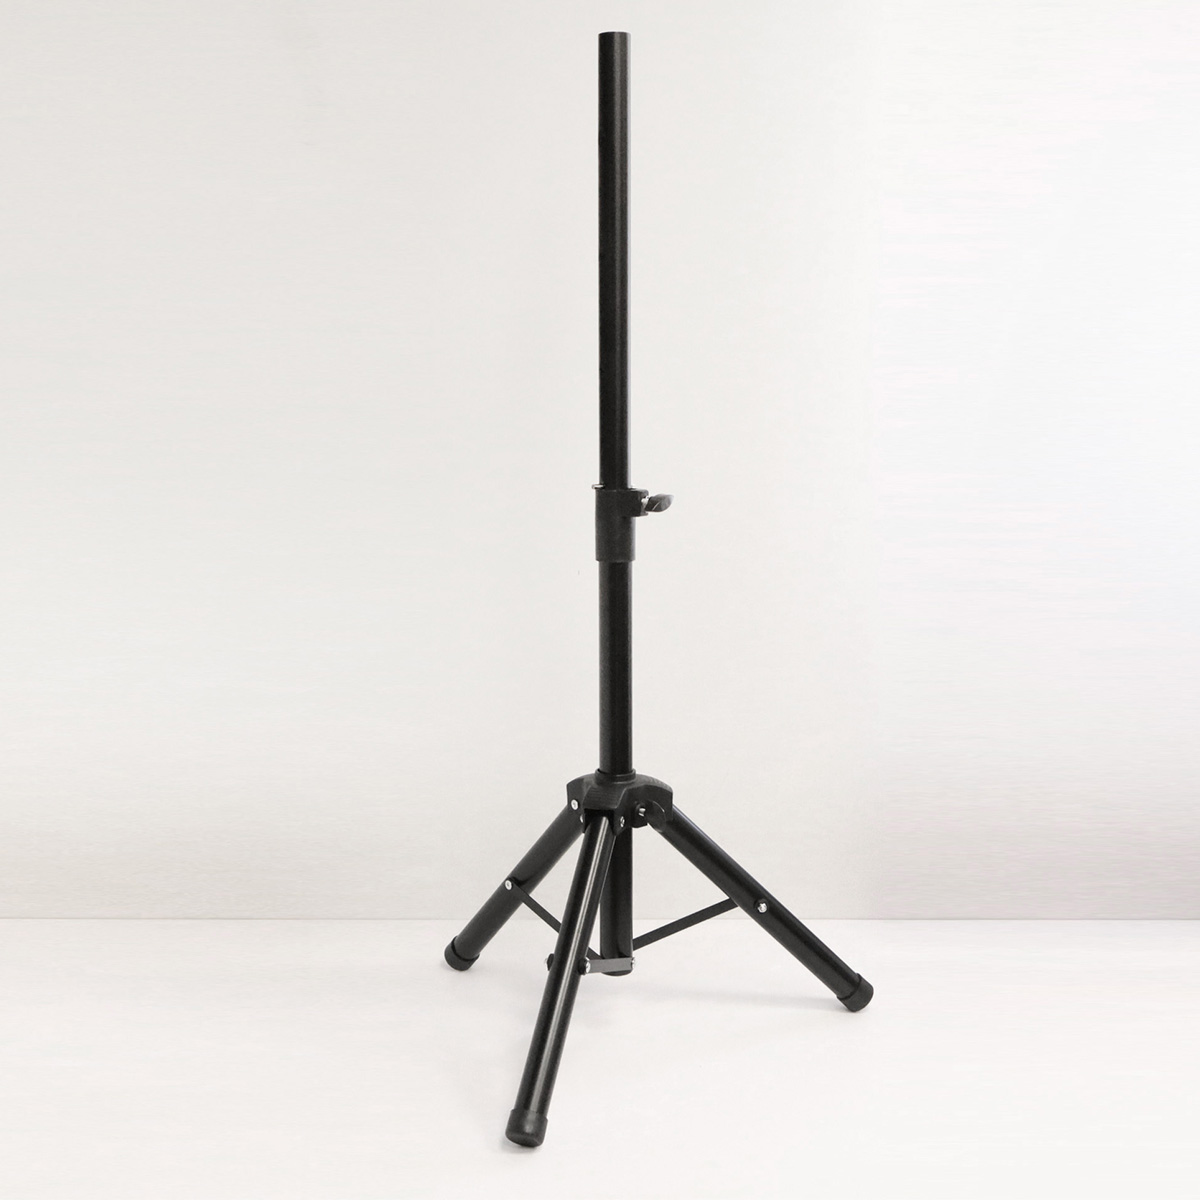 Штатив, стойка профессиональная SPS-502M для аудиоколонки, speaker stand, с площадкой, регулировка высоты 63 - 120 см, цвет черный